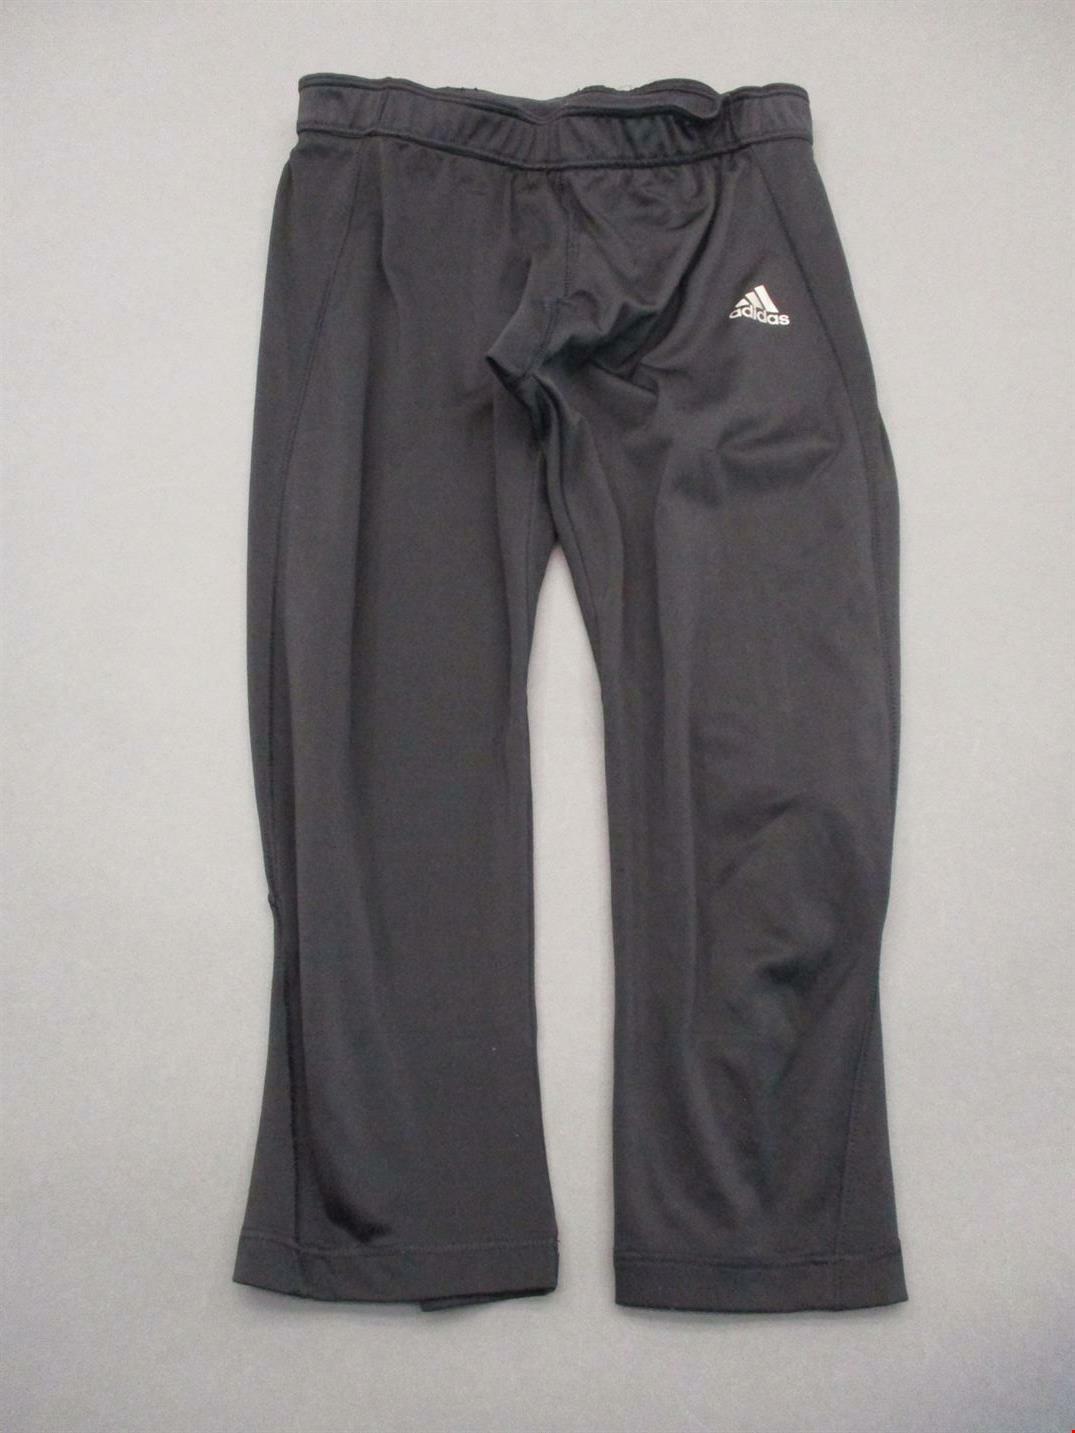 Adidas Size M Womens Black Athletic TechFit Active Compression Capri Pants  T426